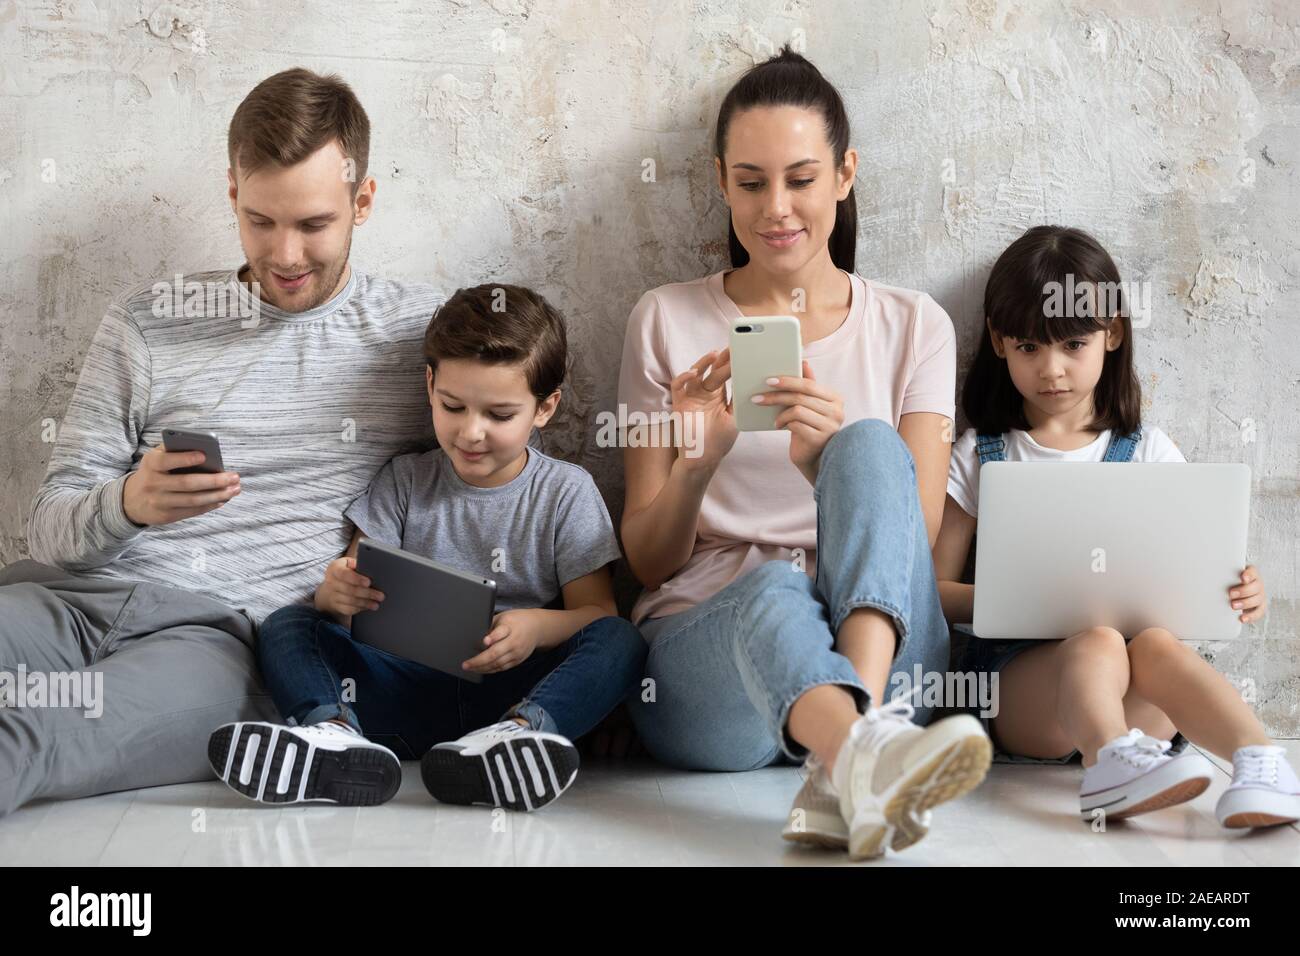 Glückliche Familie mit Kinder sitzen auf dem Boden mit modernen Gerät. Stockfoto